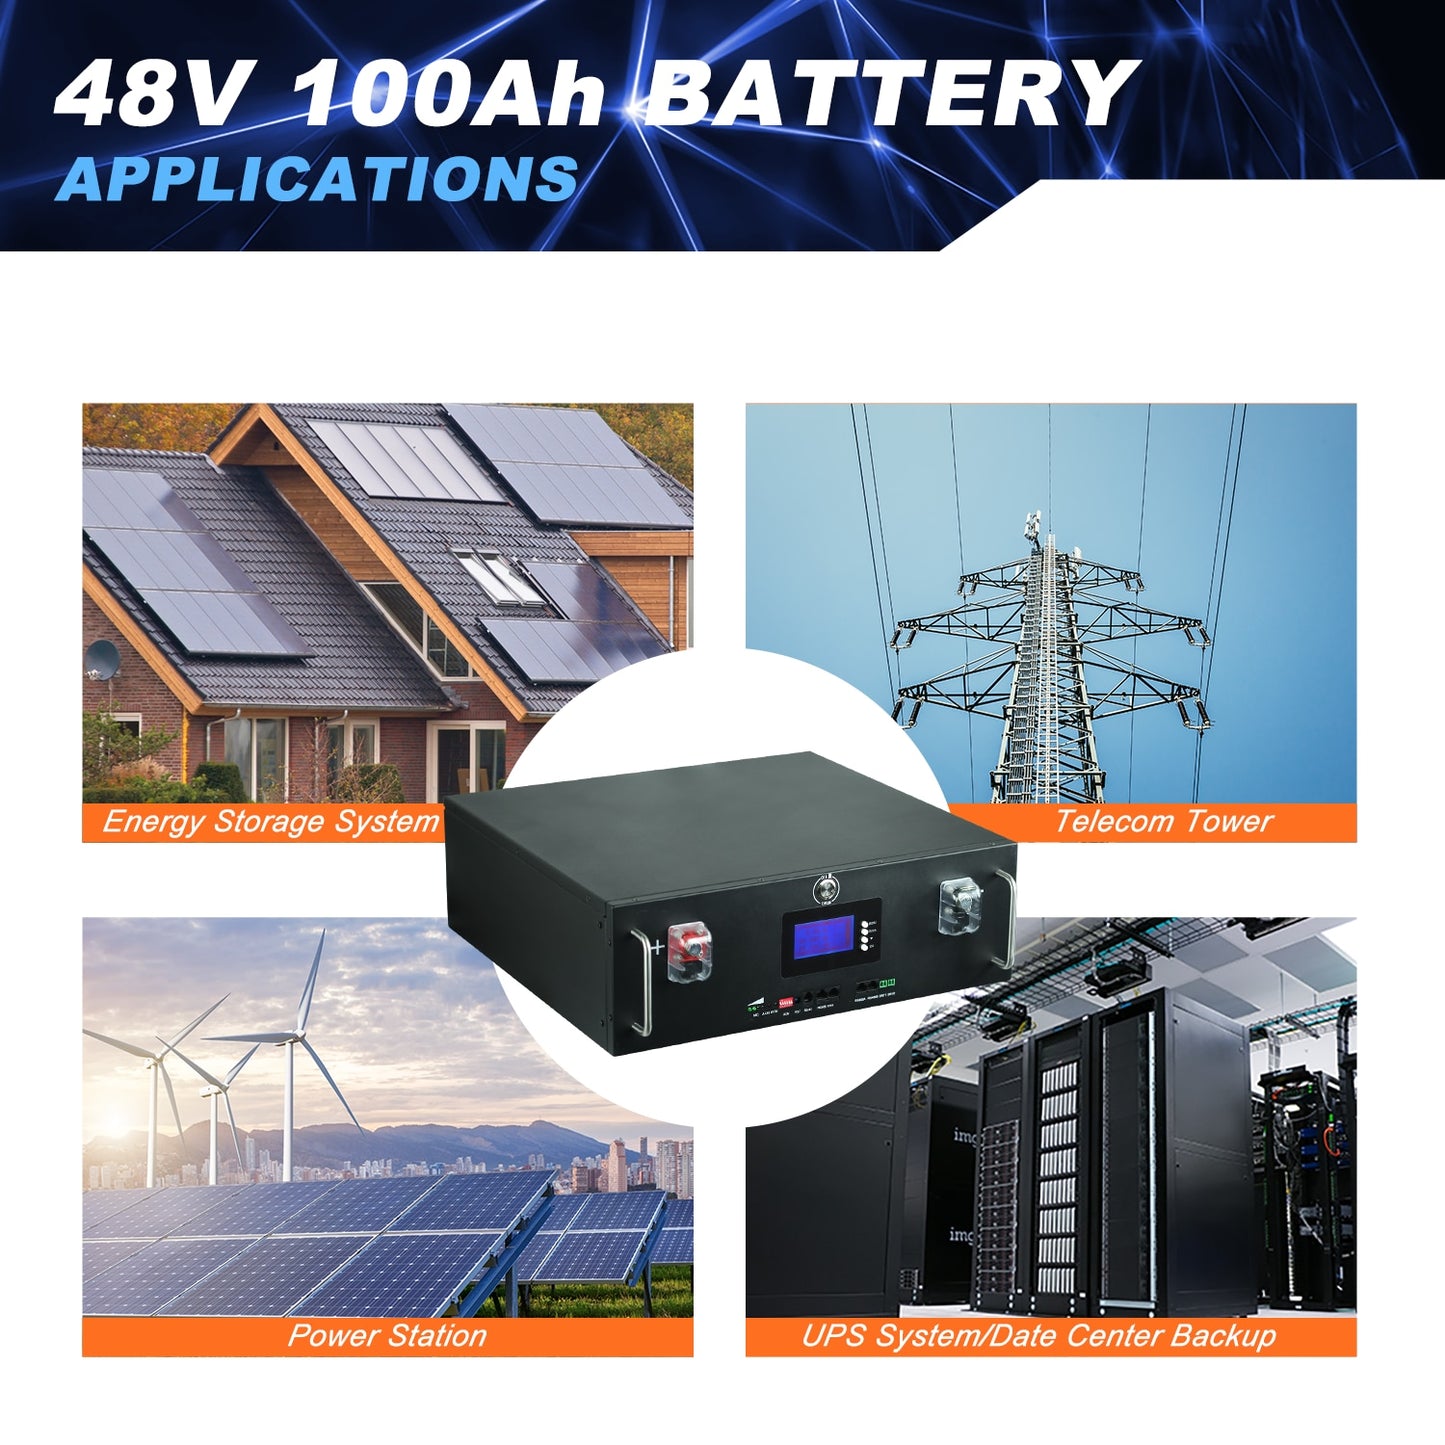 Nuovo pacco batterie LiFePo4 da 48 V 100 Ah - Batterie al litio ferro fosfato da 51,2 V 5 kW 16 S 100 A Pacchetto BMS integrato da 48 V per solare senza tasse